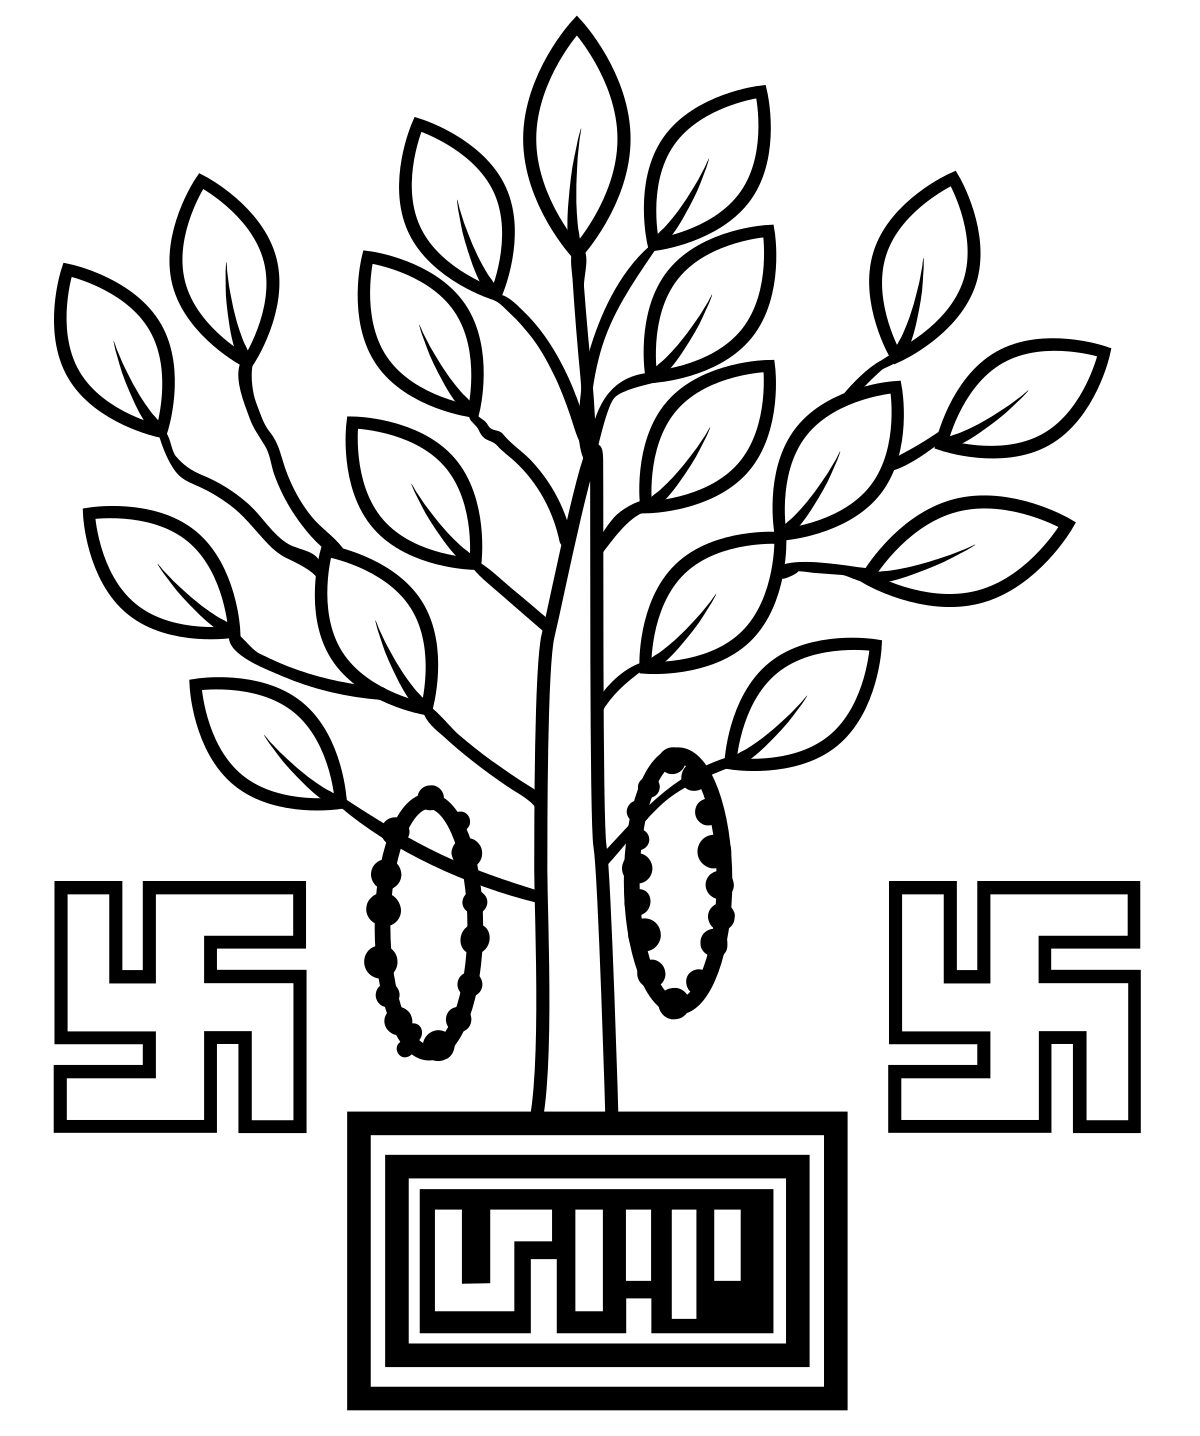 Emblem of Bihar - Wikipedia